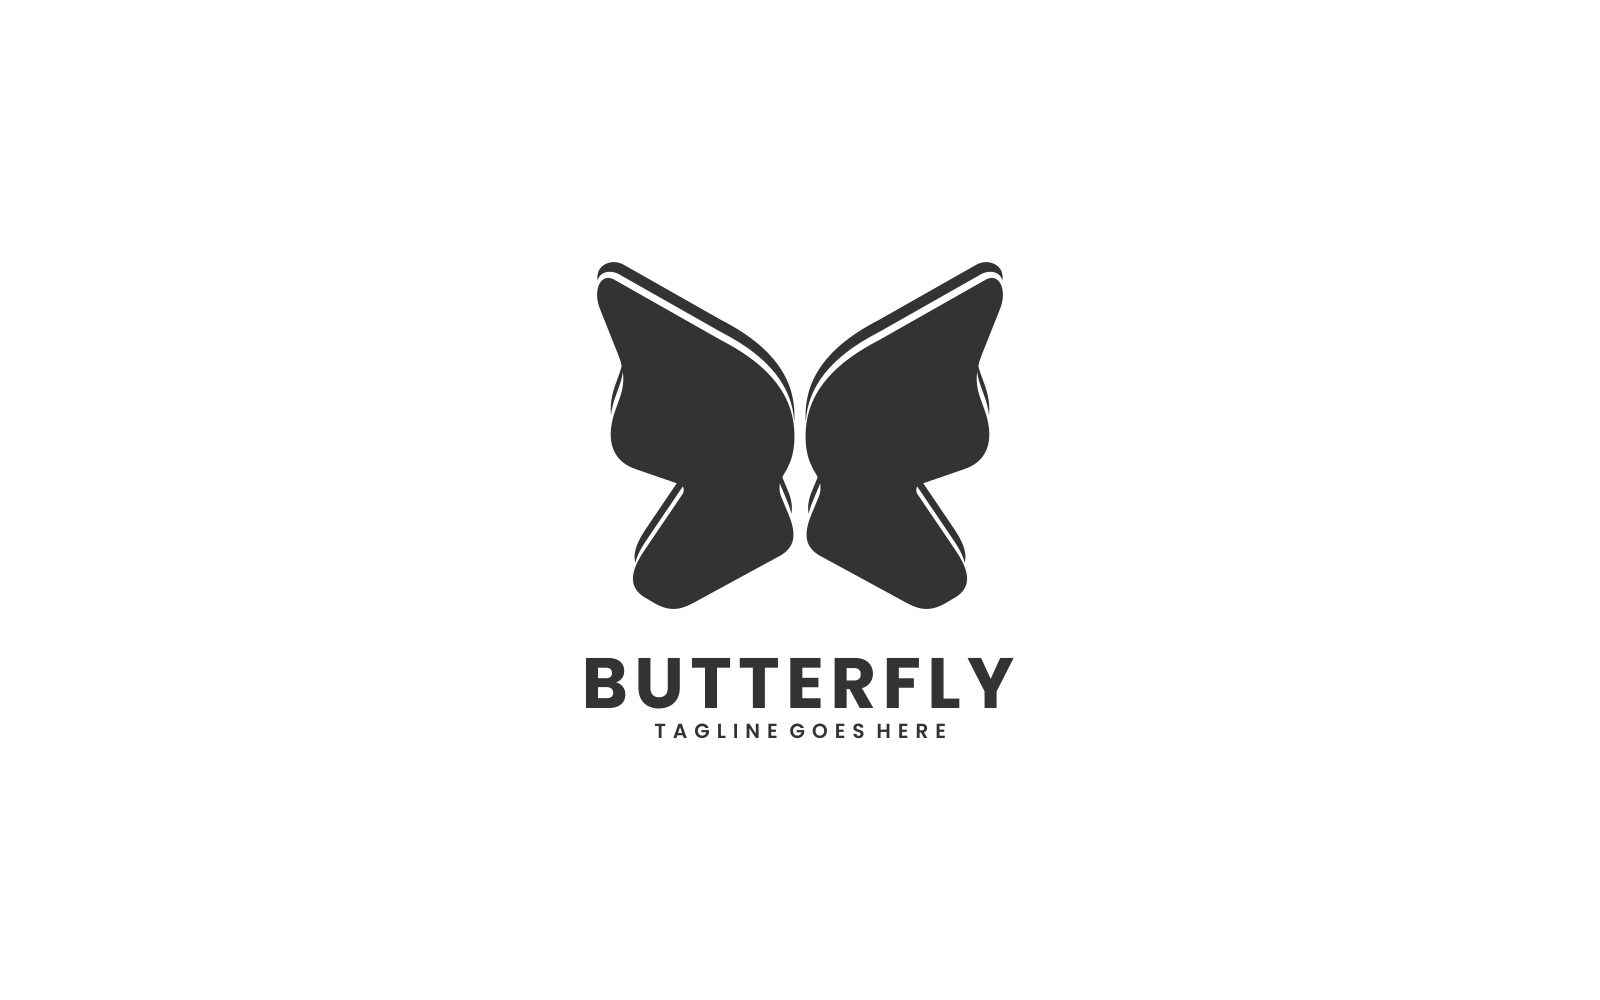 Butterfly Silhouette Logo